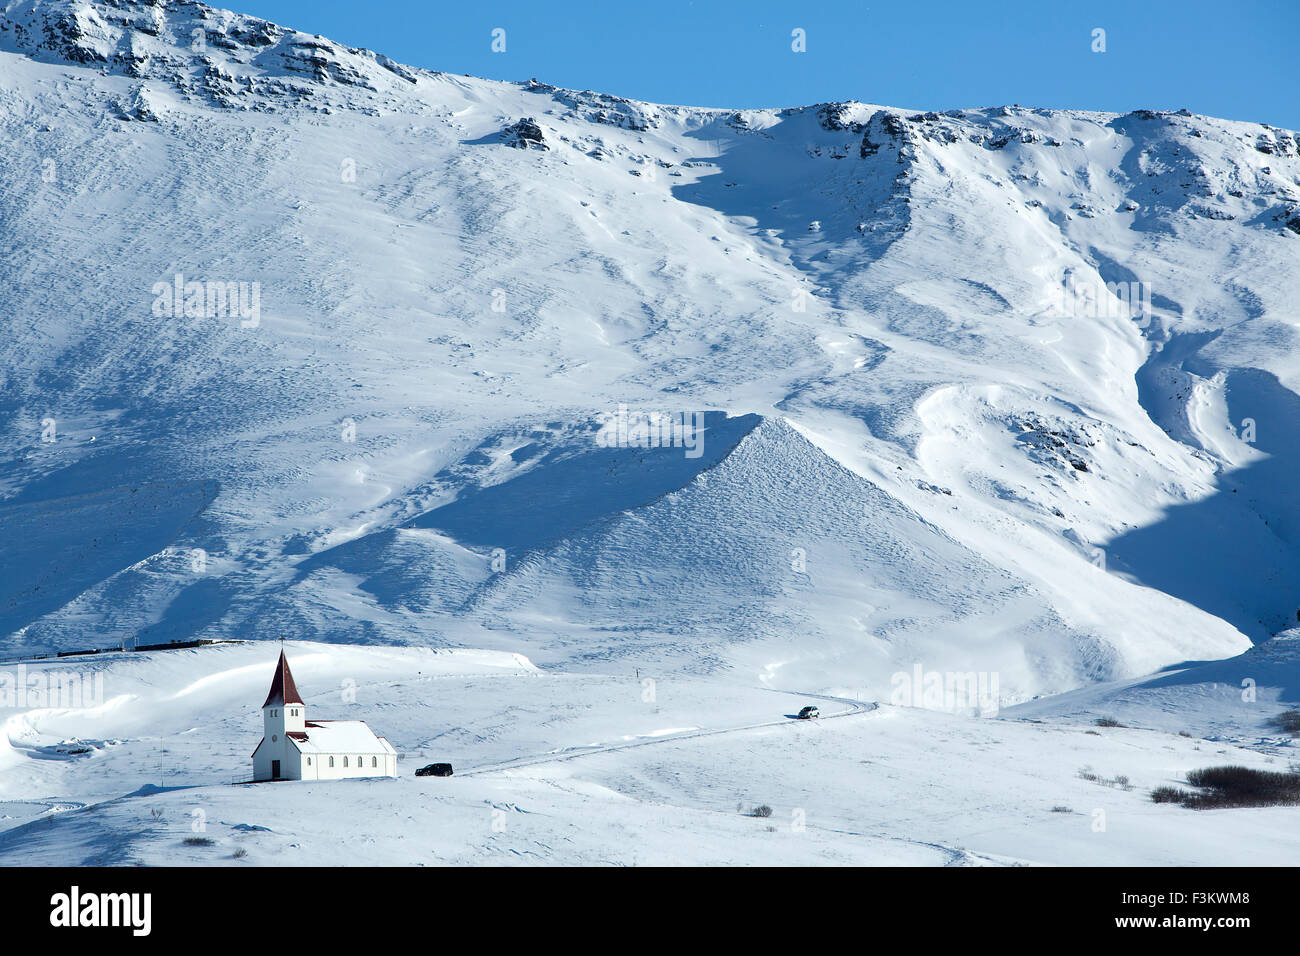 Eglise de Vik en hiver avec des montagnes enneigées, de l'Islande Banque D'Images